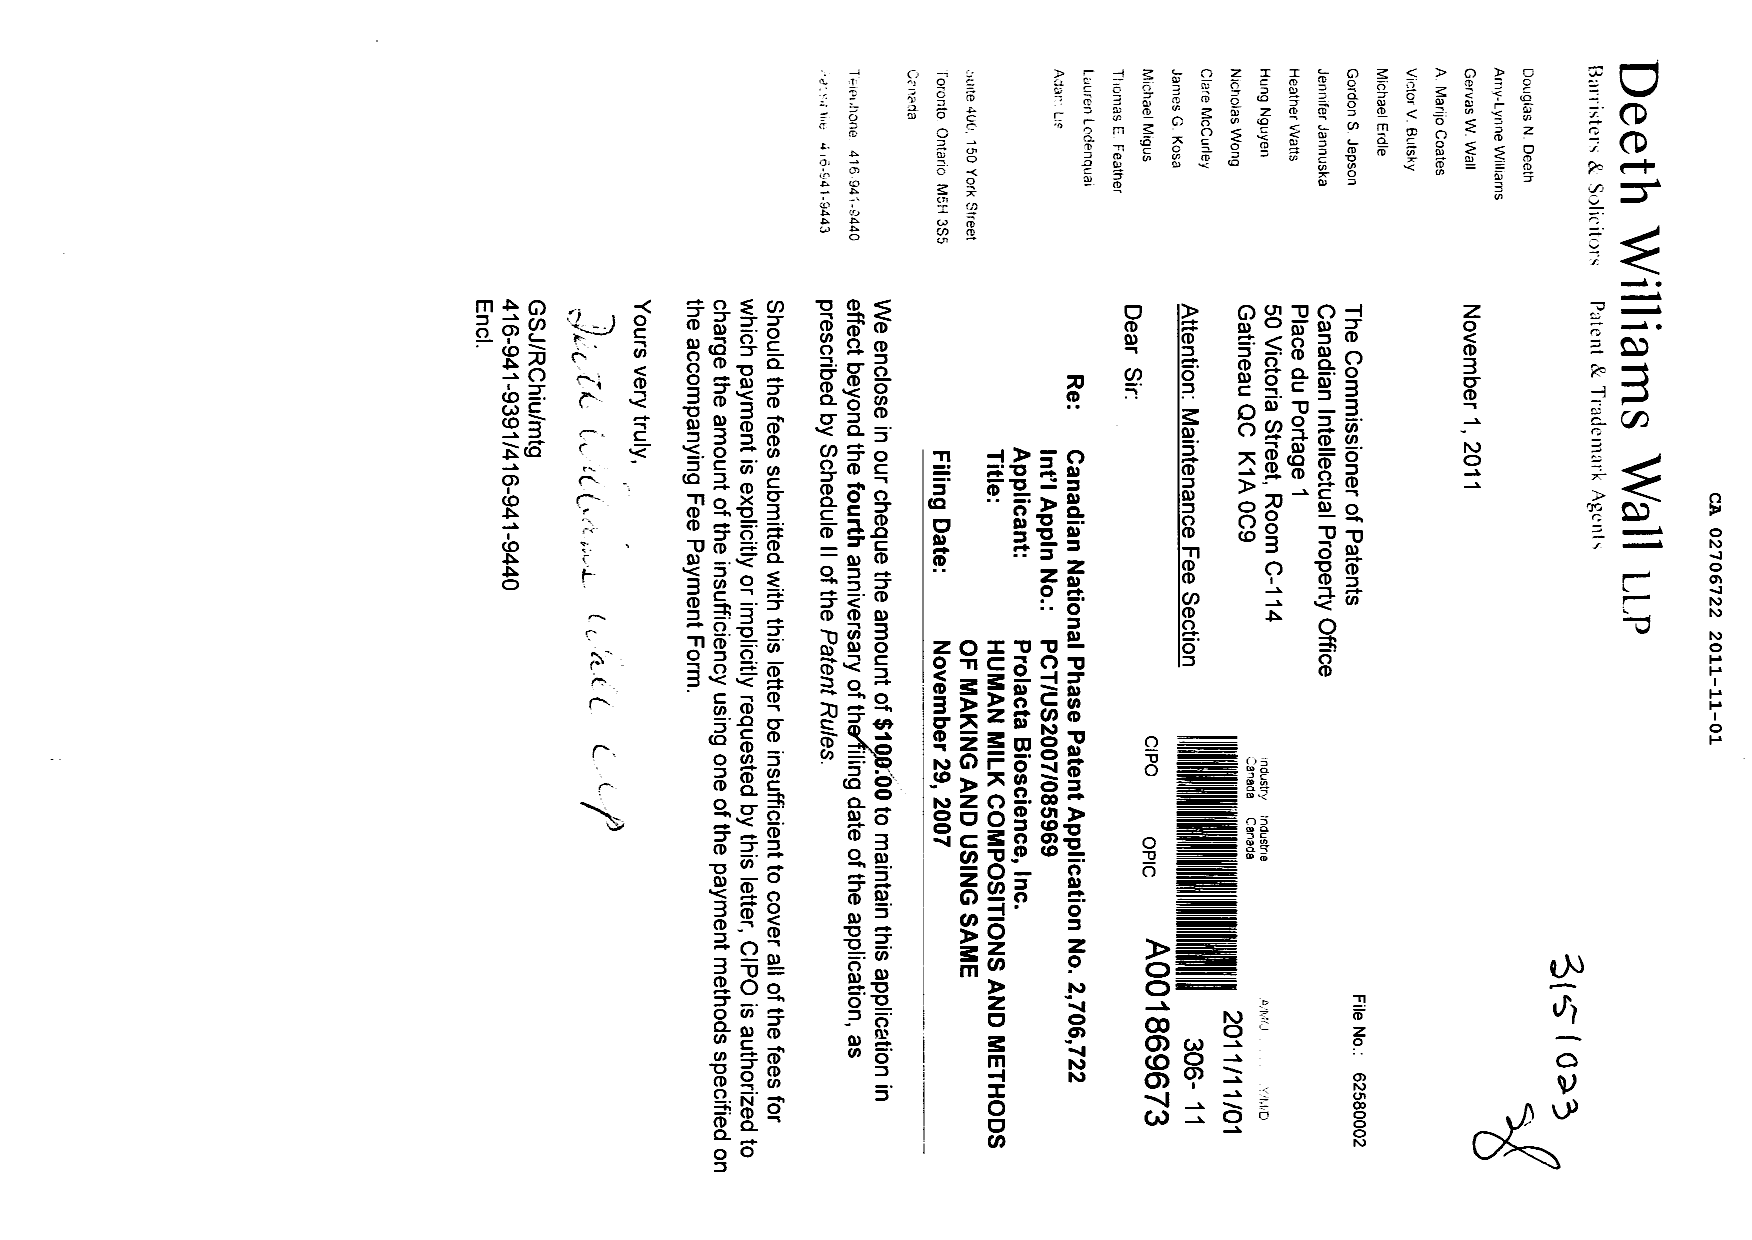 Document de brevet canadien 2706722. Taxes 20101201. Image 1 de 1